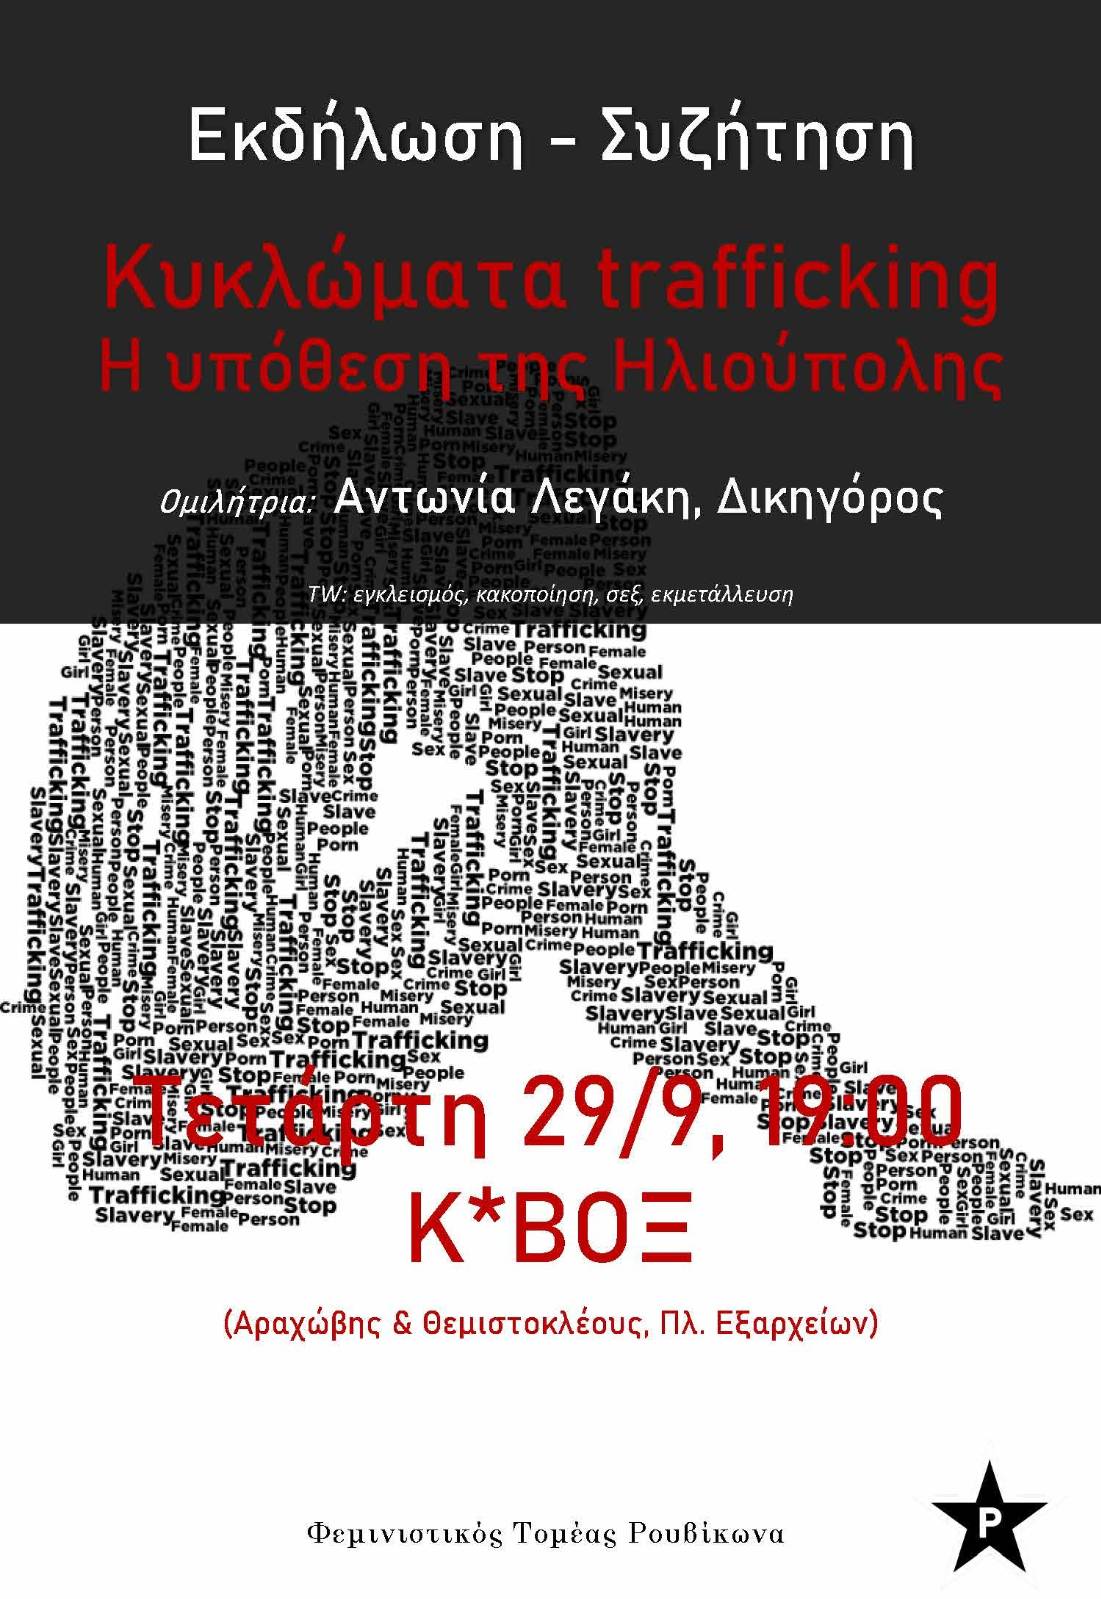 Εκδήλωση-συζήτηση Κυκλώματα trafficking